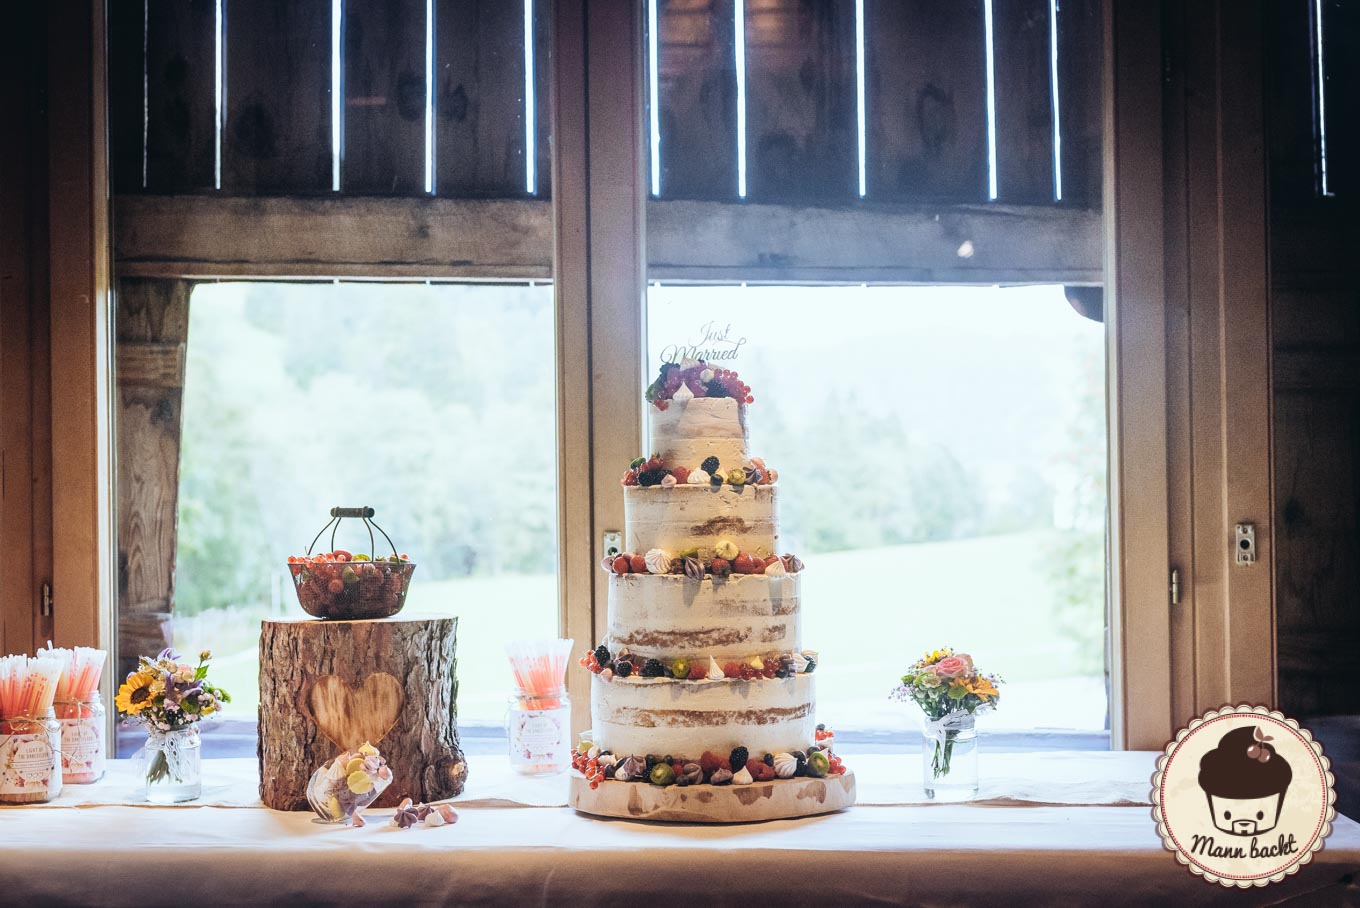 wedding-cake-hochzeitstorte-mann-backt-marian-moschen-naked-cake-4-von-10